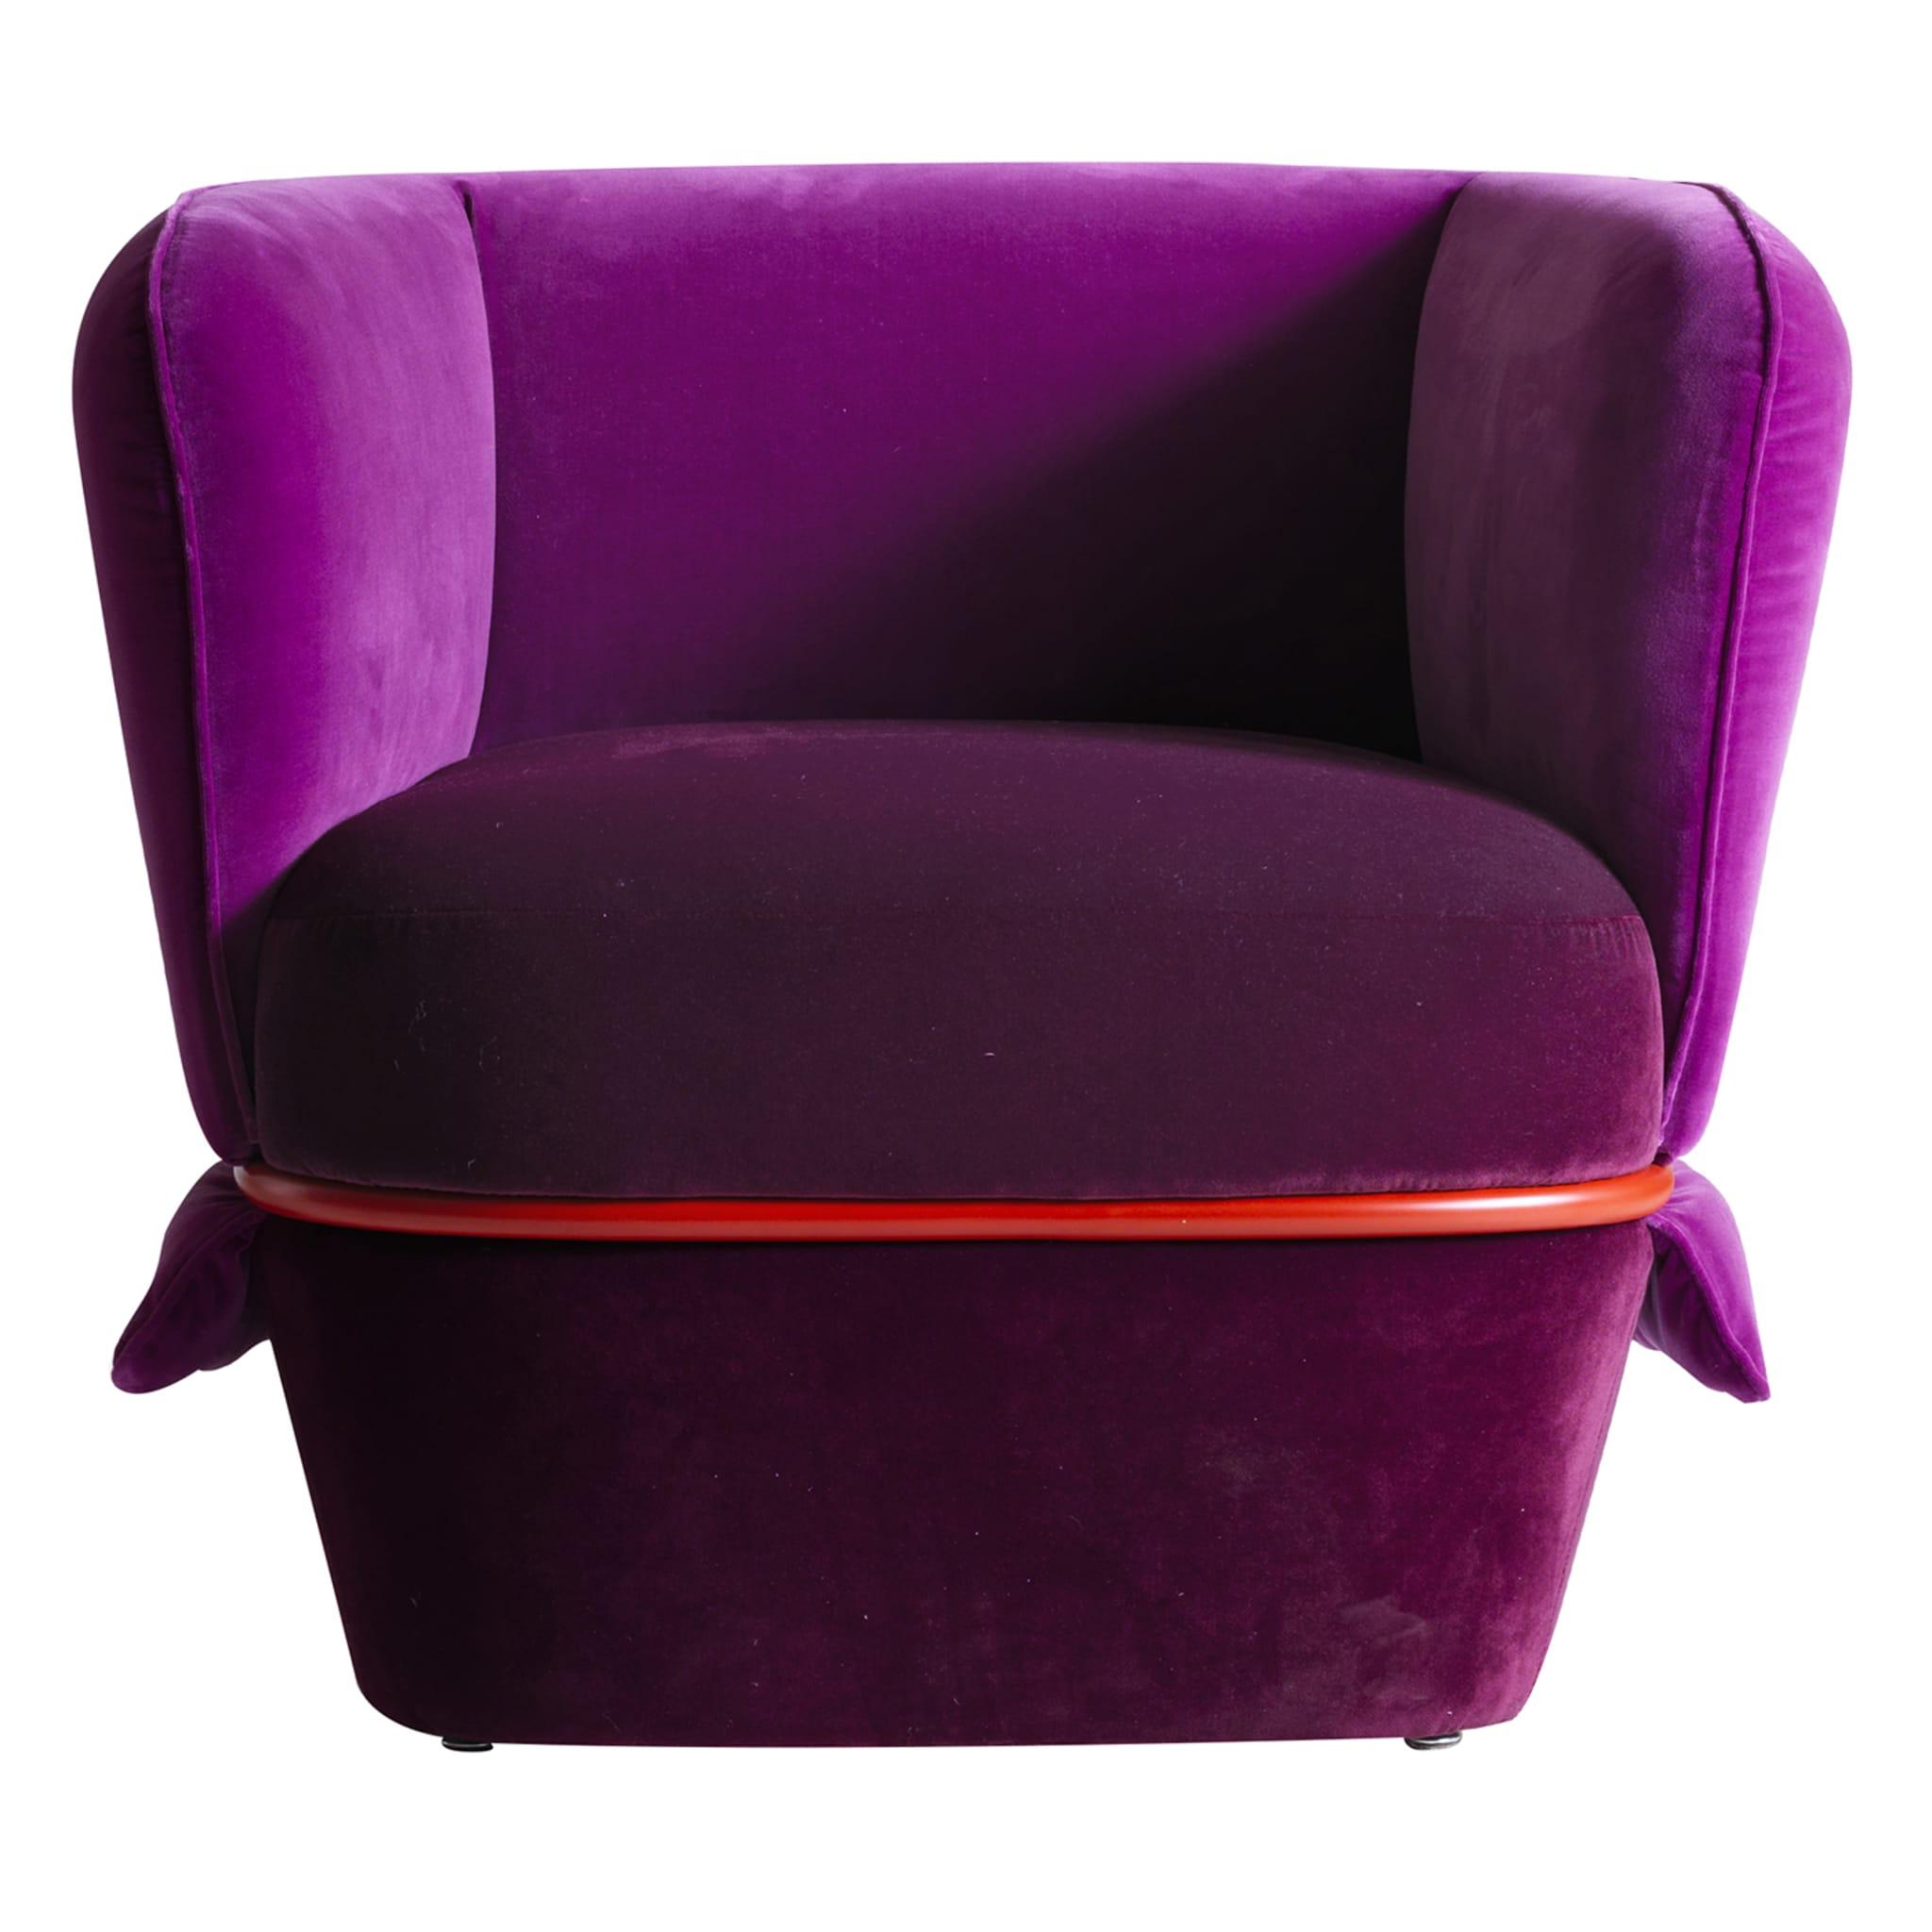 Chemise Purple Luxury Armchair